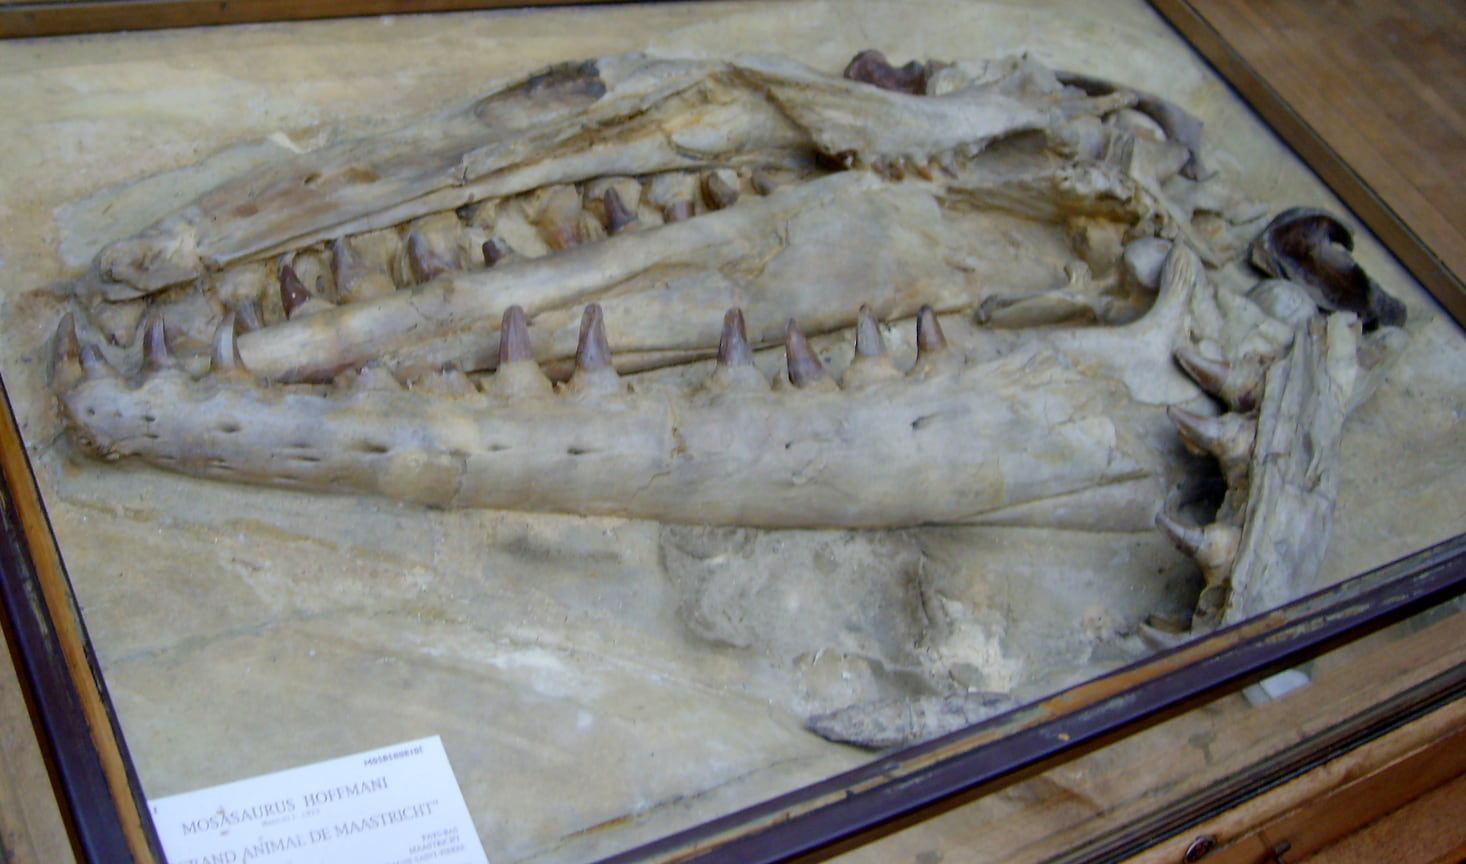 Череп мозазавра Гоффмана, найденный в известняковом карьере Маастрихта между 1770 и 1774 годами